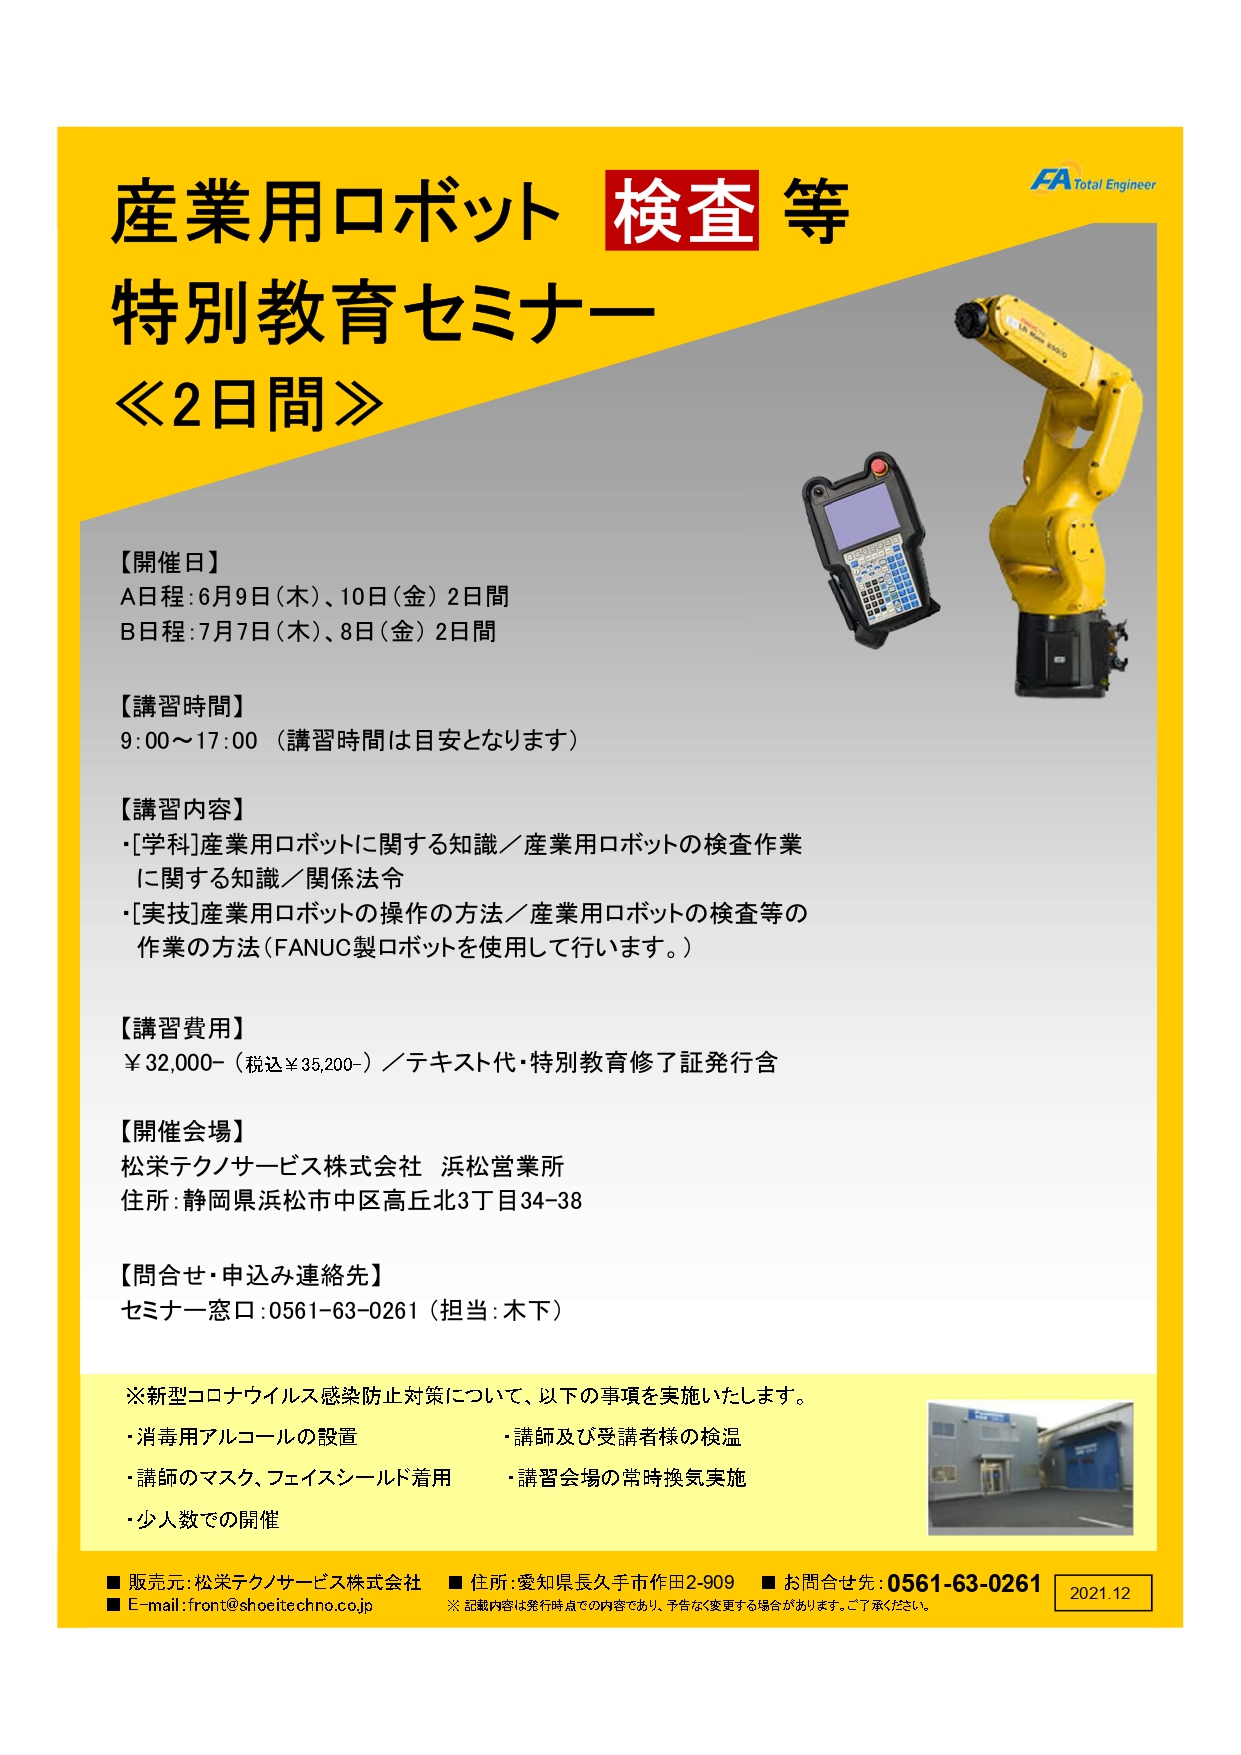 【静岡県開催】産業用ロボット特別教育（検査等）セミナー開催のお知らせ アイキャッチ